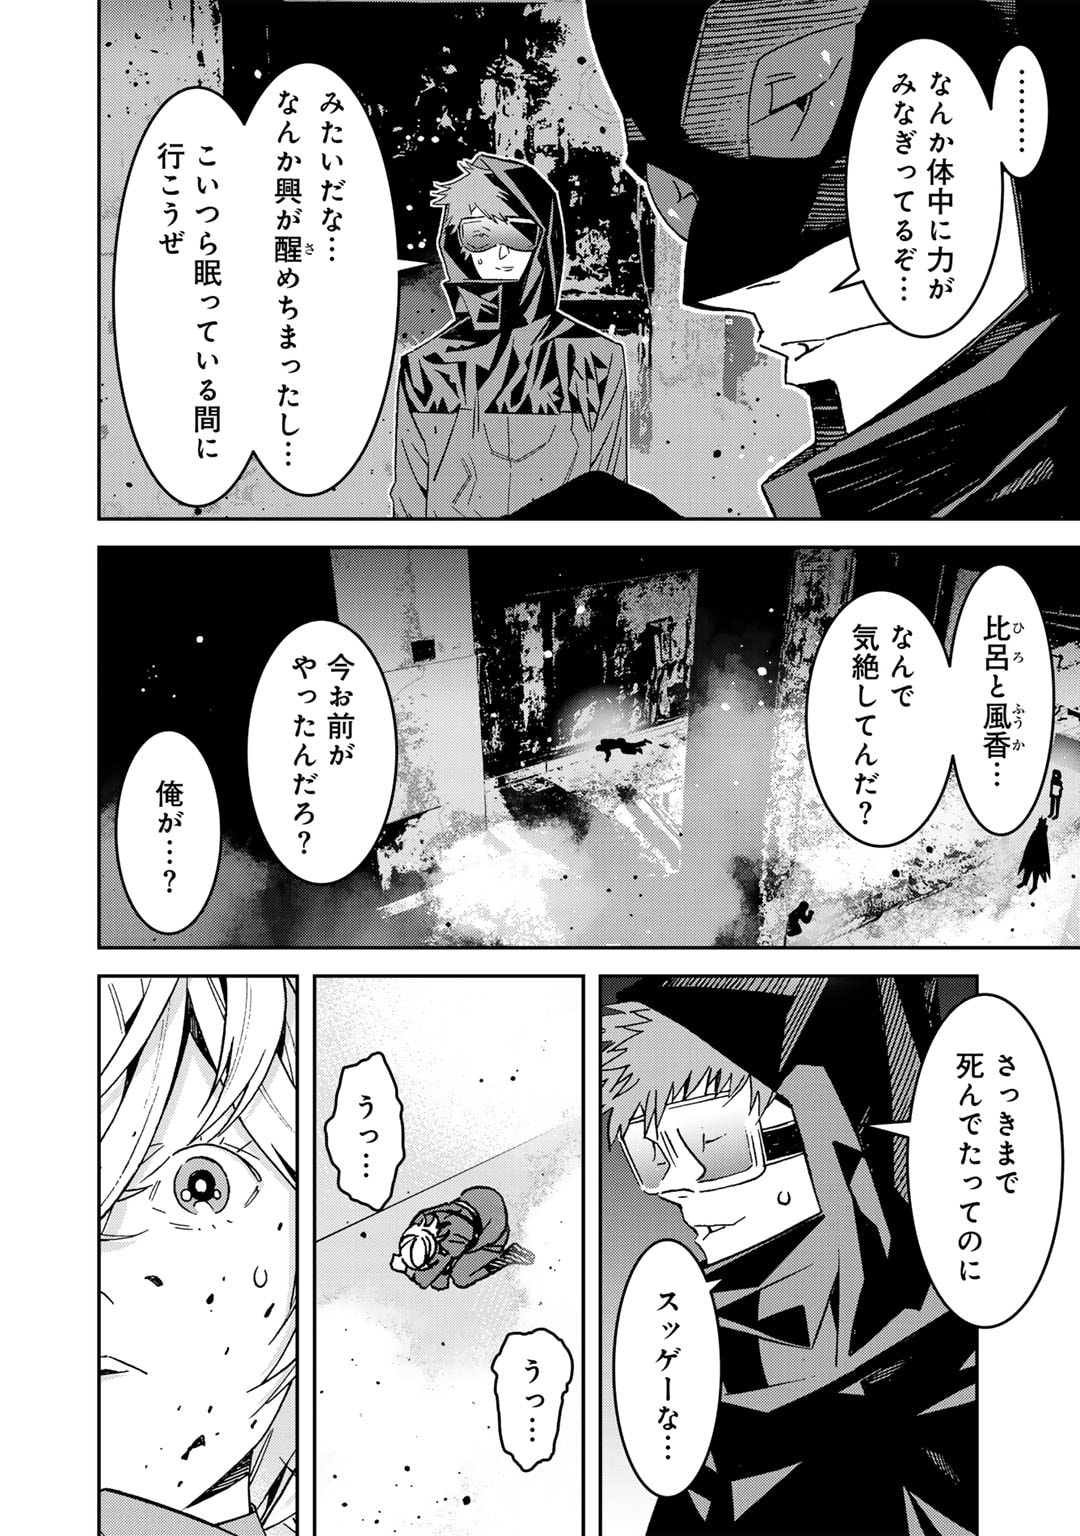 Shikkoku no Dark Hero - Chapter 15 - Page 2